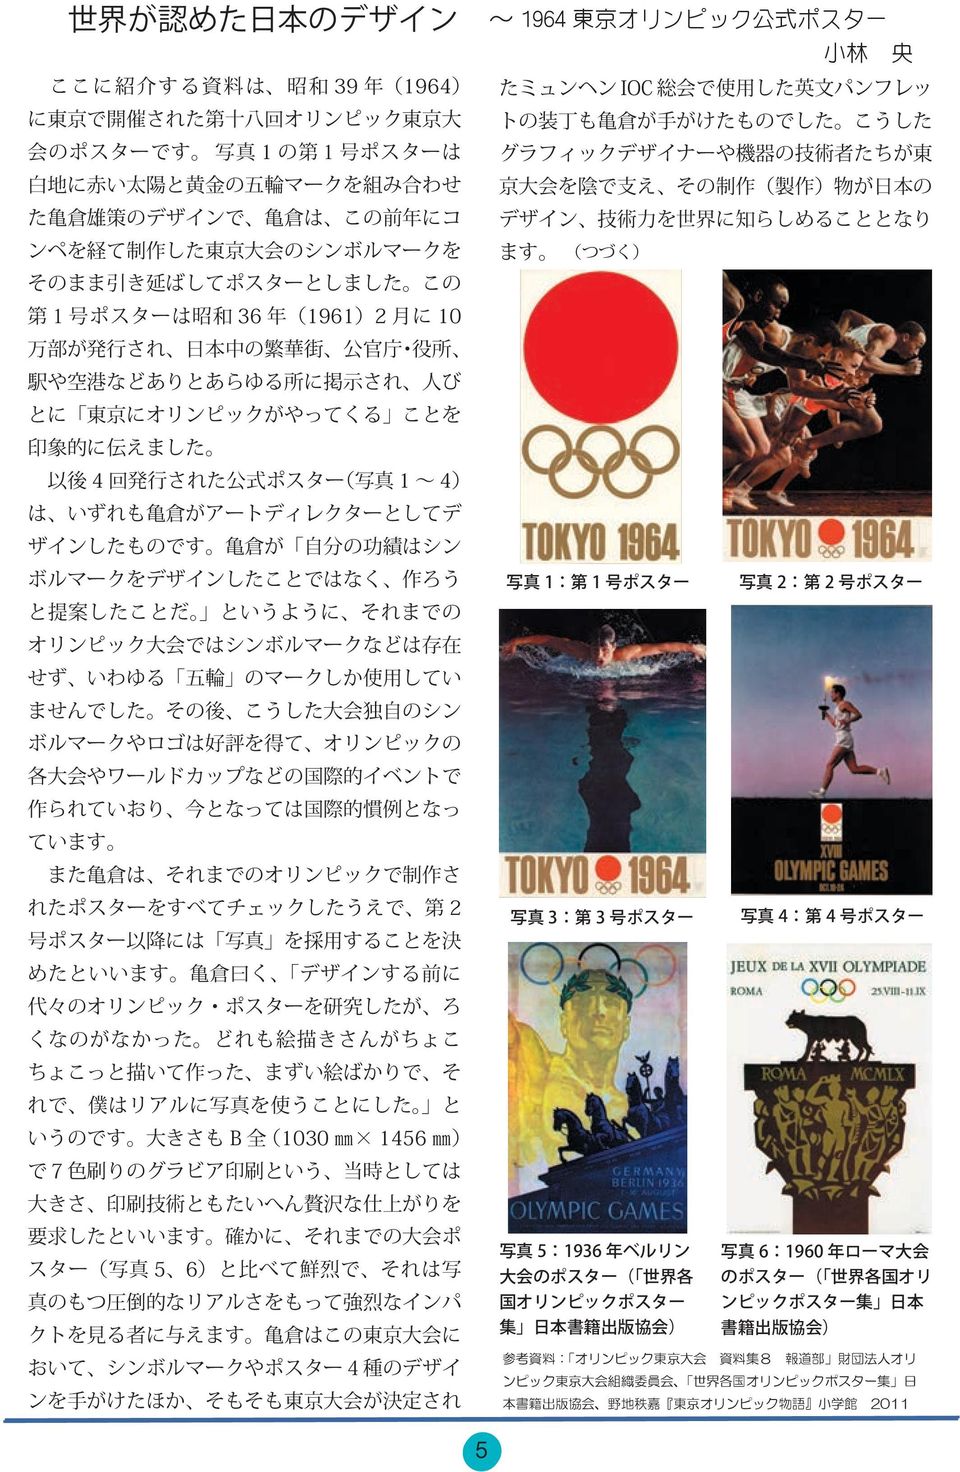 ンピック 東 京 大 会 組 織 委 員 会 世 界 各 国 オリンピックポスター 集